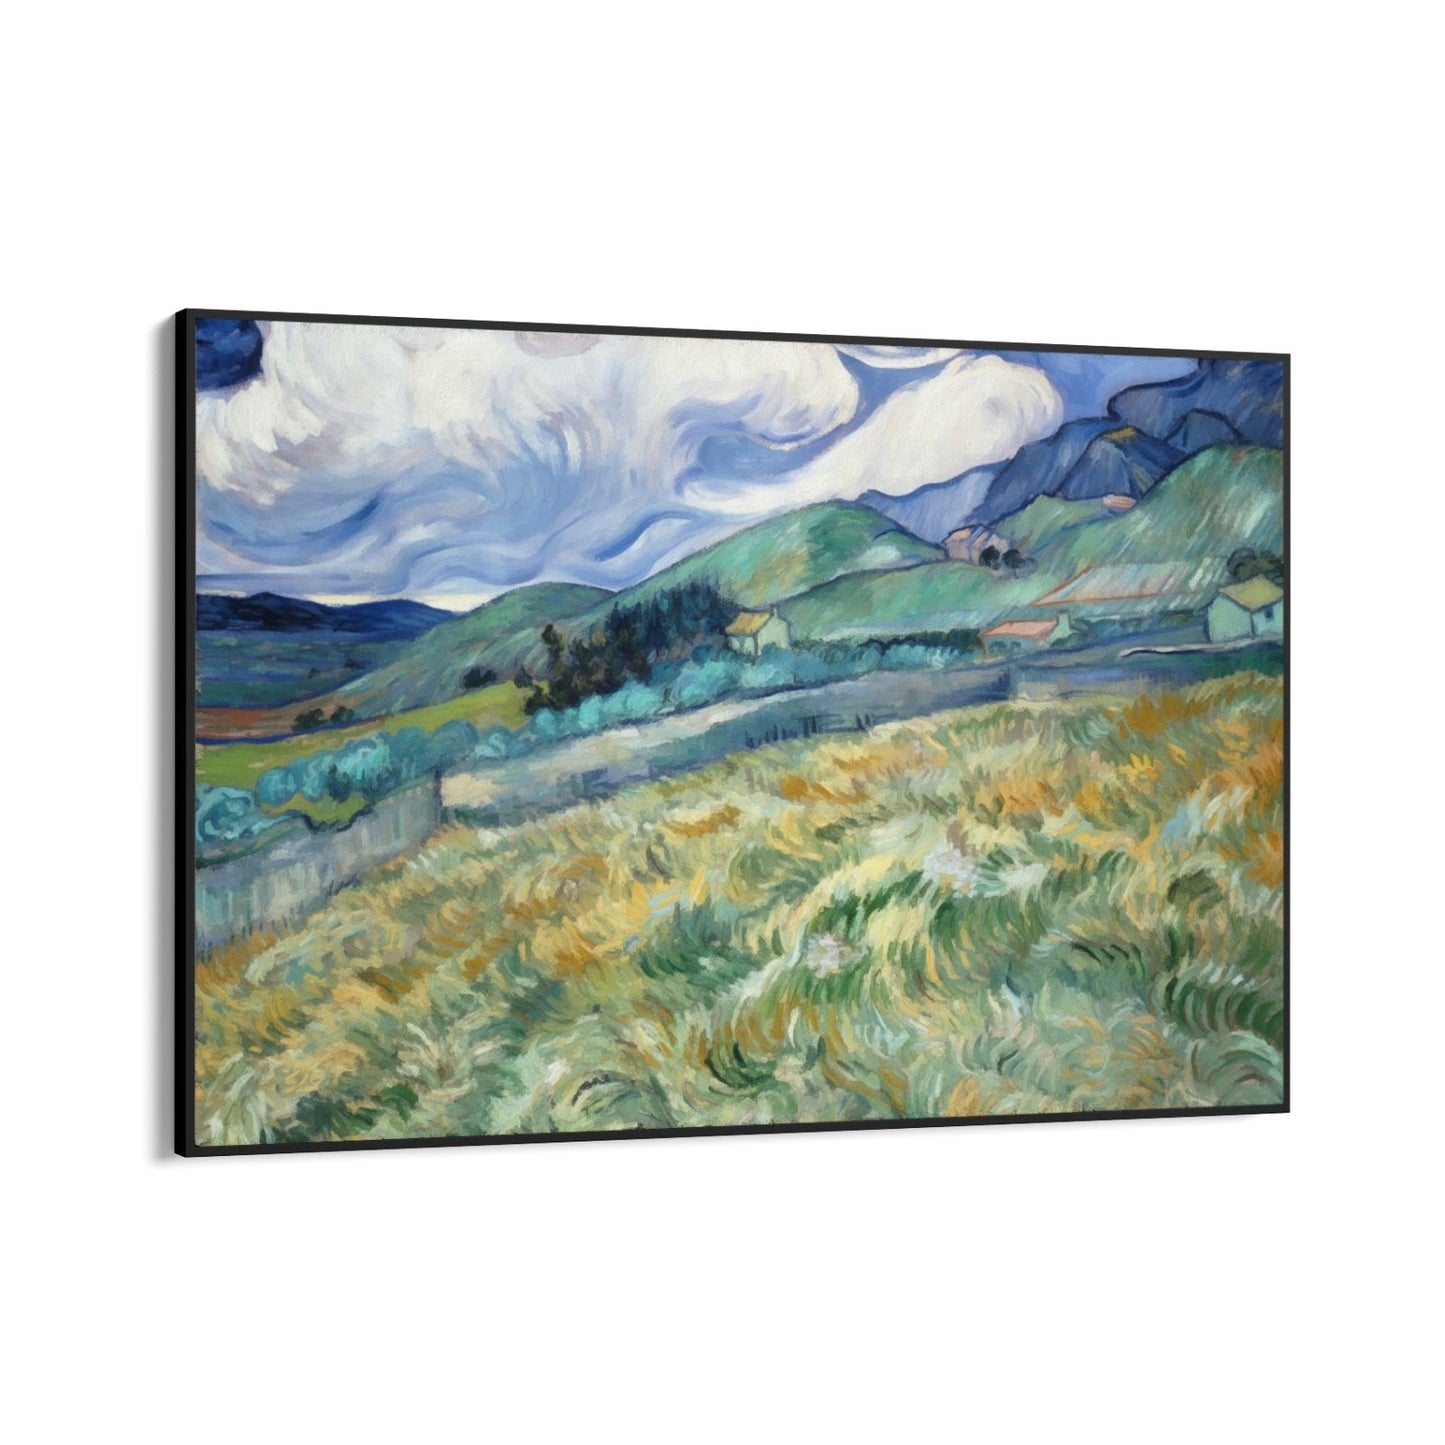 Pšenično polje i planine 1889, Vincent Van Gogh